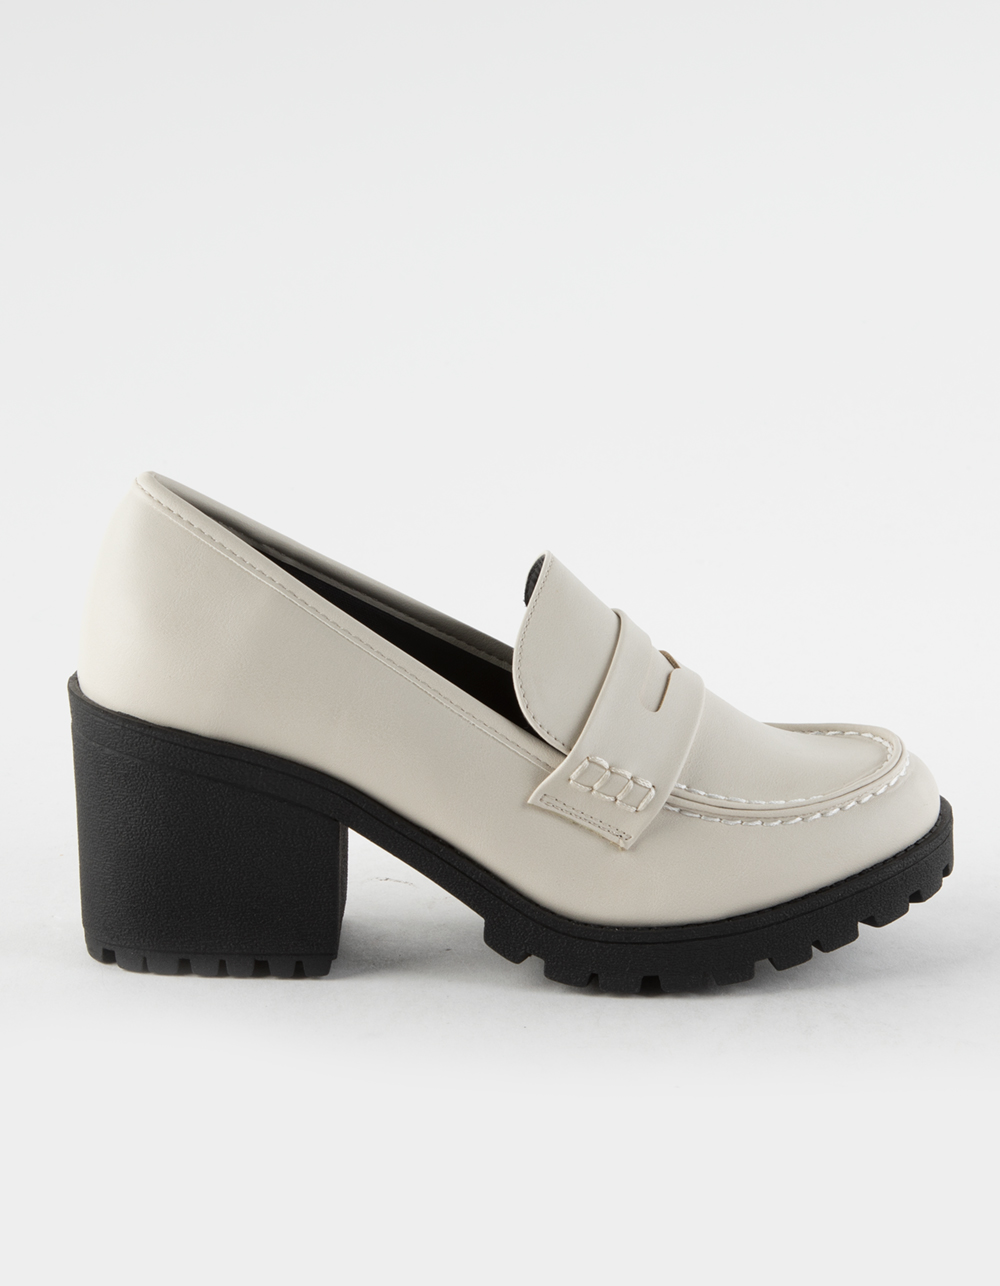 Kinder Platform Womens Penny Loafer Shoes | Tillys